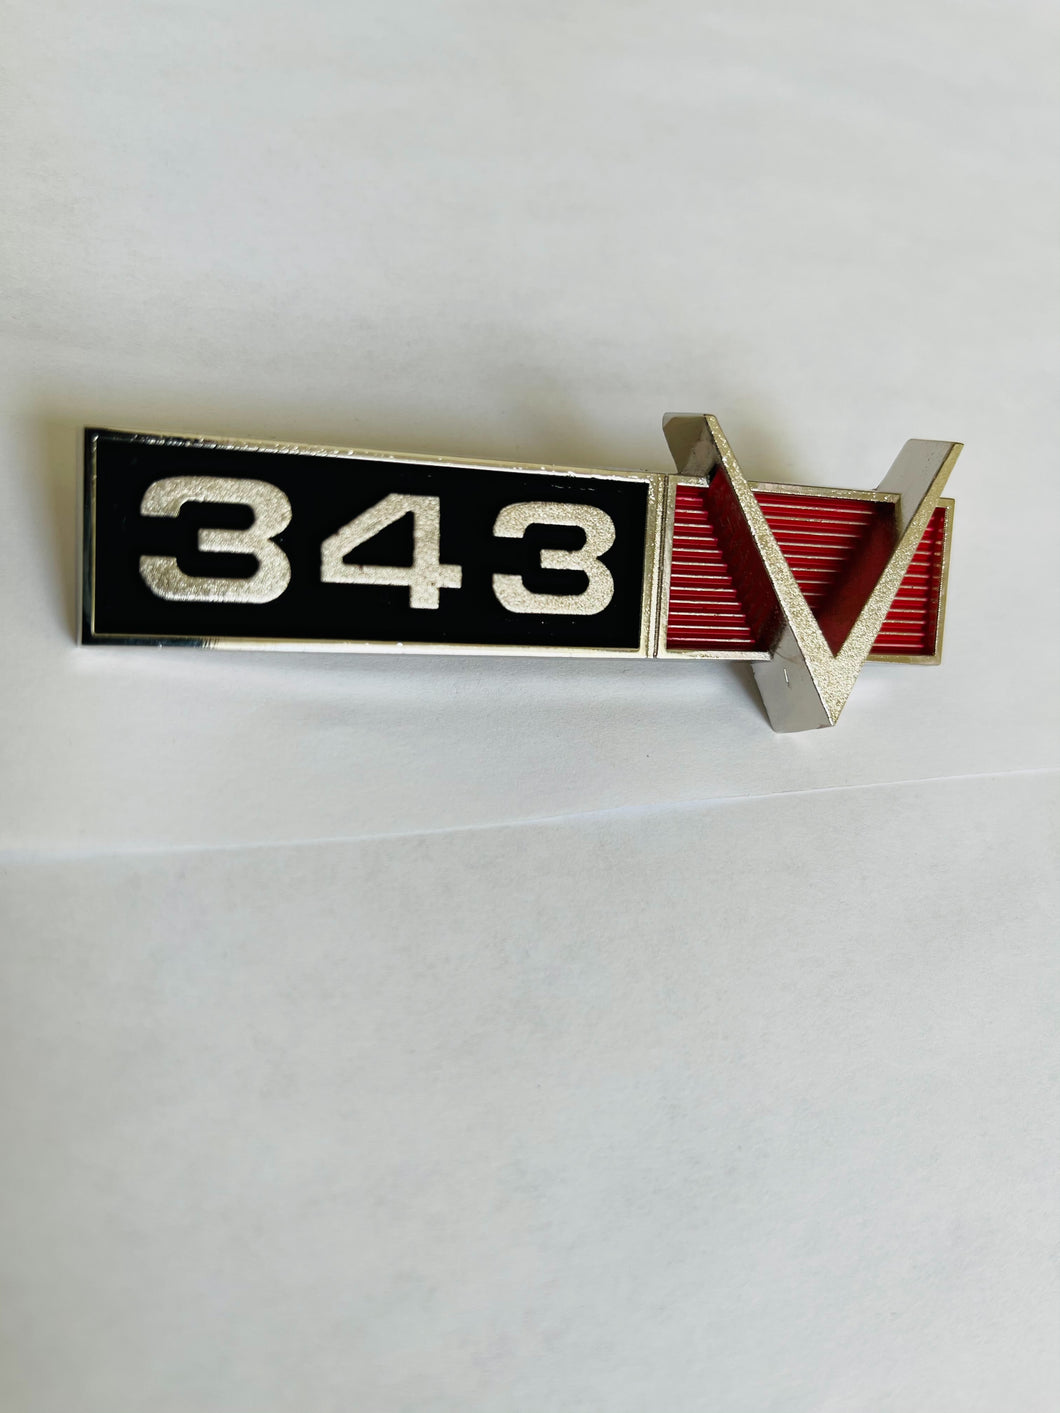 AMC 343 Emblem